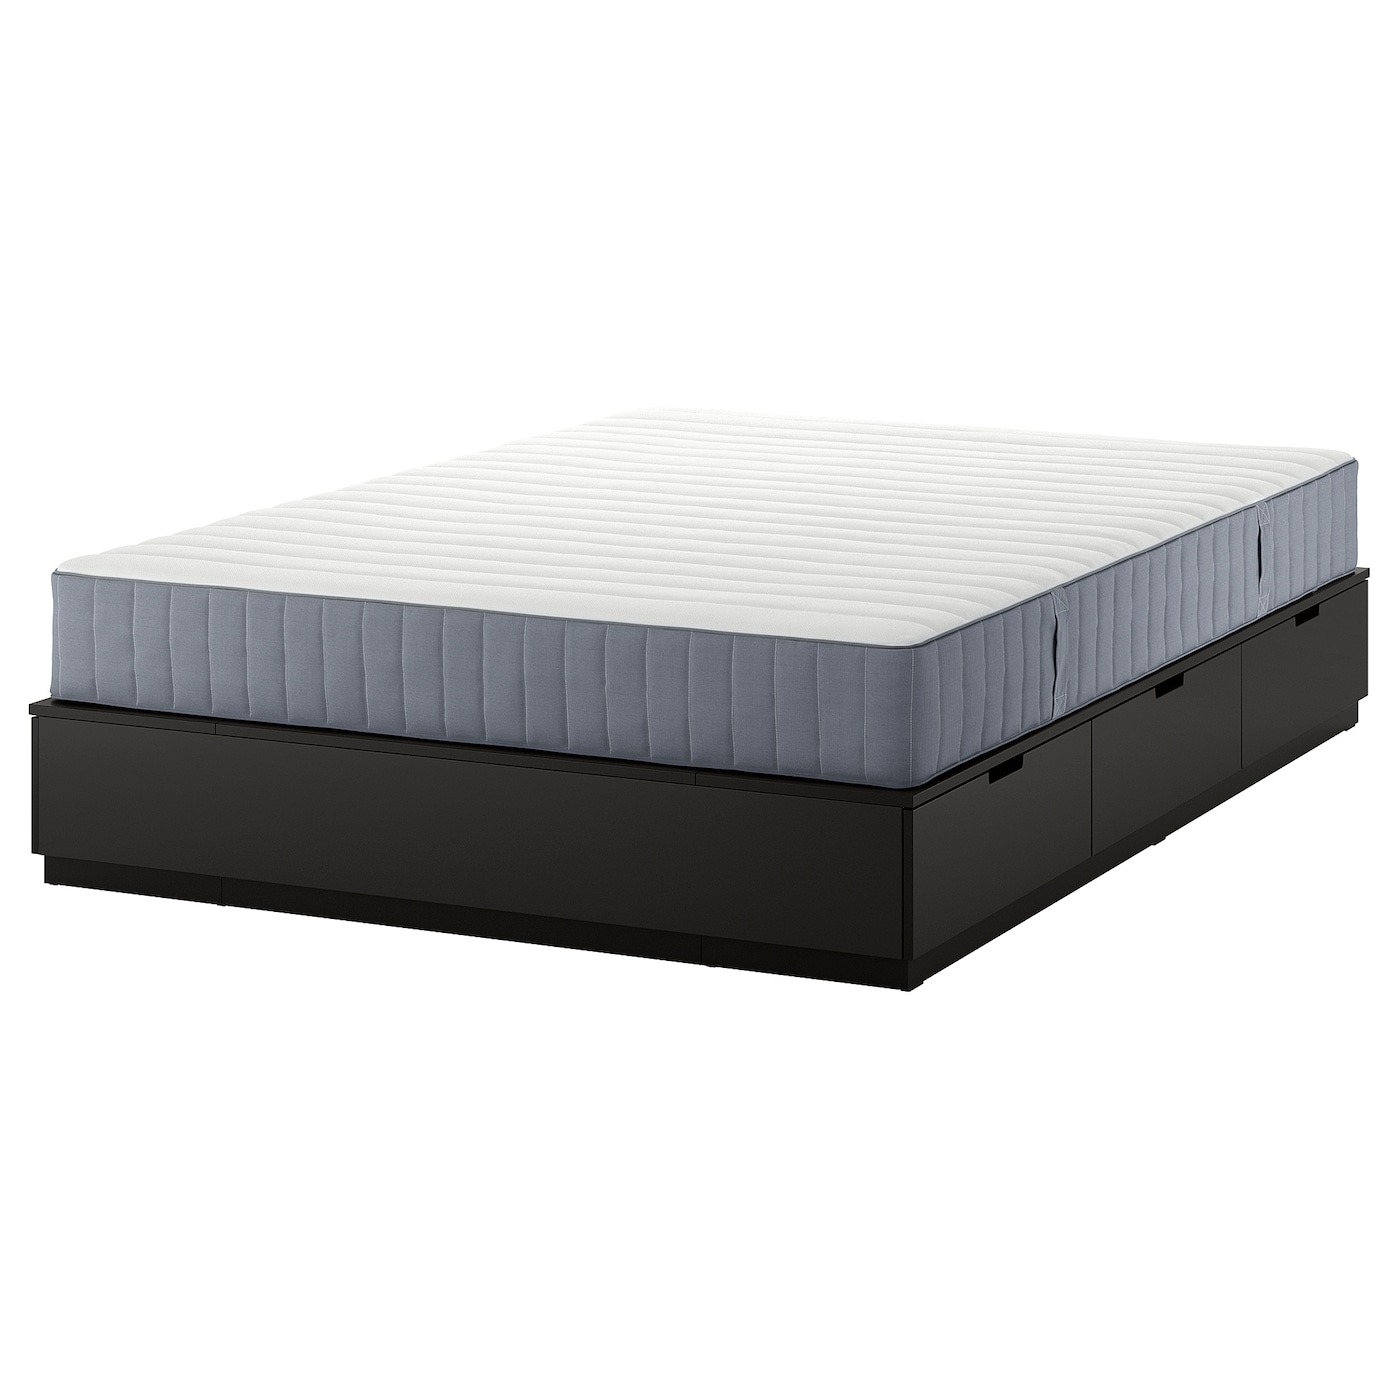 Каркас кровати с контейнером и матрасом - IKEA NORDLI, 200х140 см, матрас средне-жесткий, черный, НОРДЛИ ИКЕА